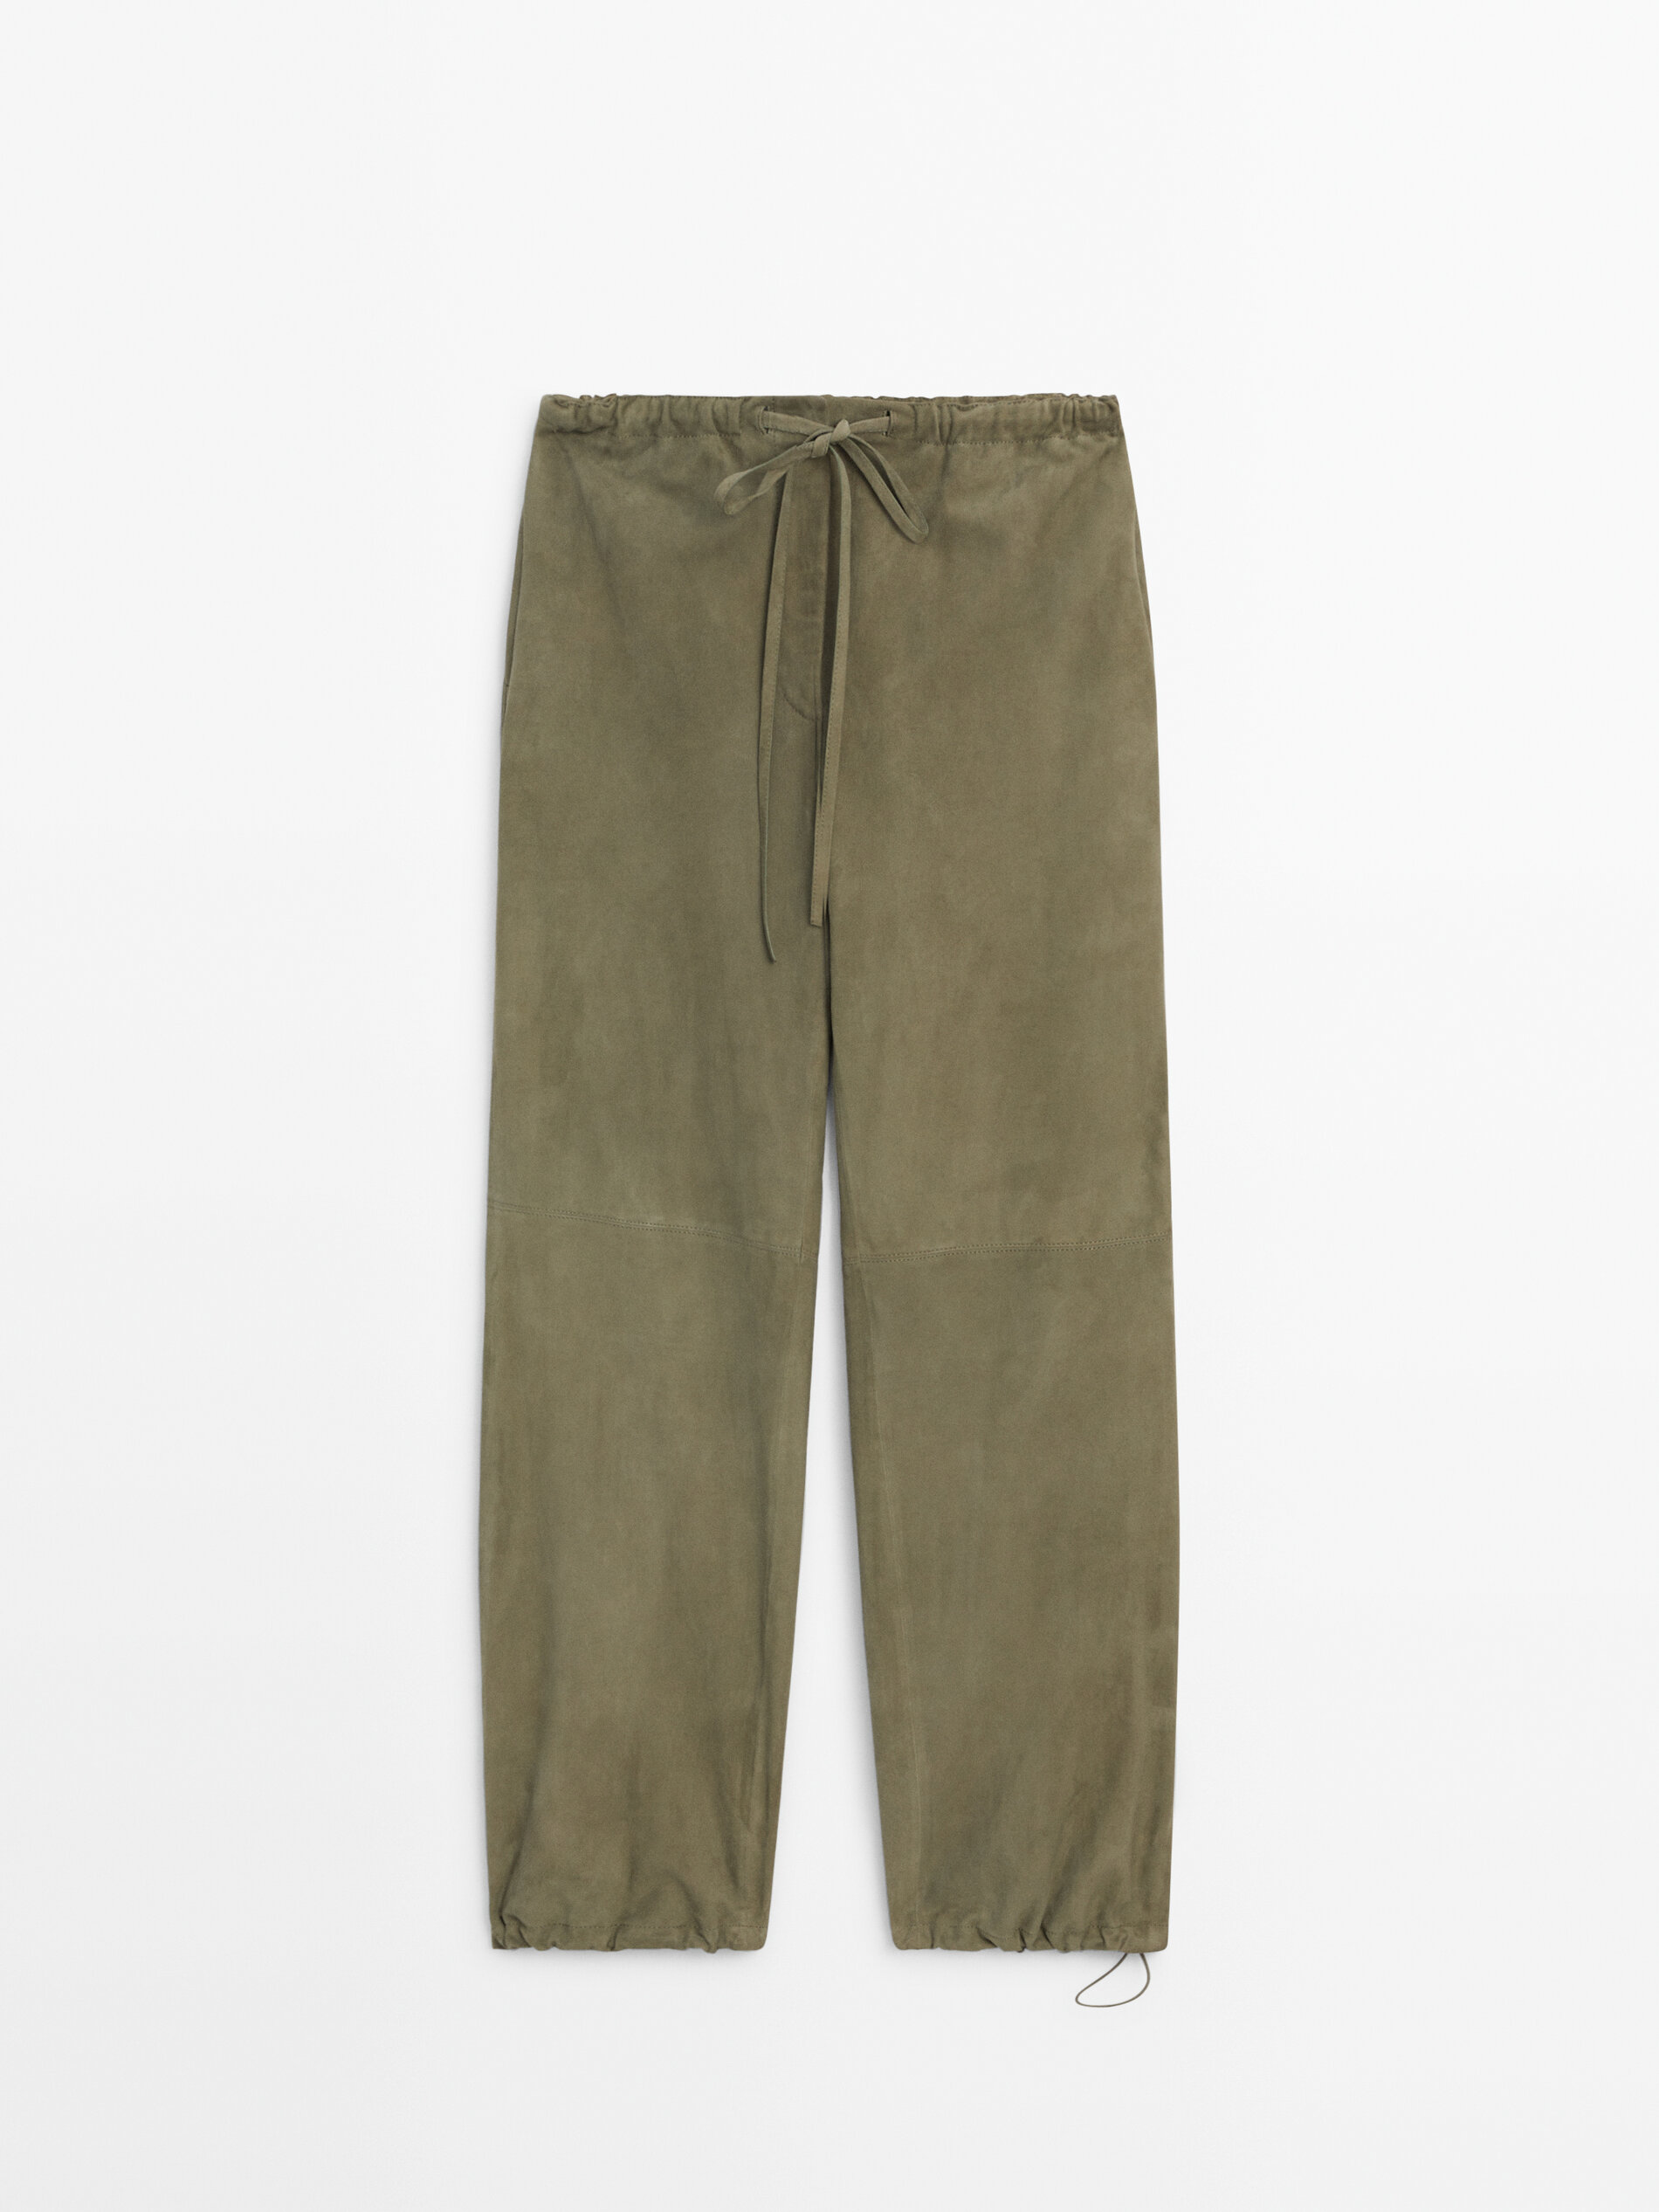 TWP Natalie Linen Cotton Wide-Leg Pants | Neiman Marcus